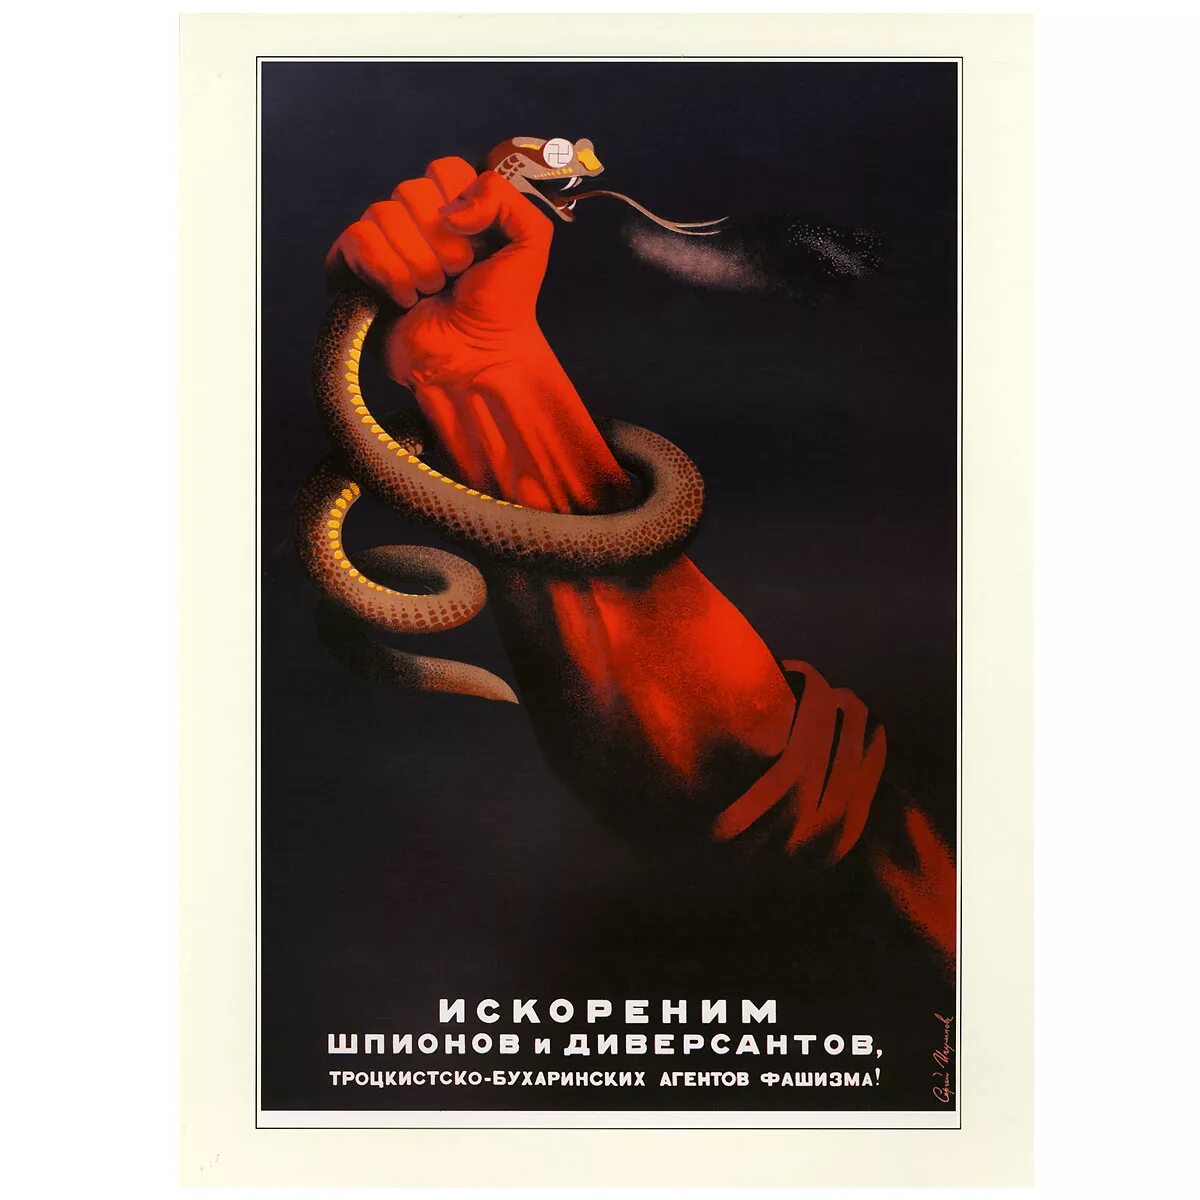 Искореним шпионов и диверсантов плакат. Плакаты СССР. Искореним шпионов и диверсантов плакат год. Советские плакаты 20-30 годов. К чему призывают плакаты 20 30 годов